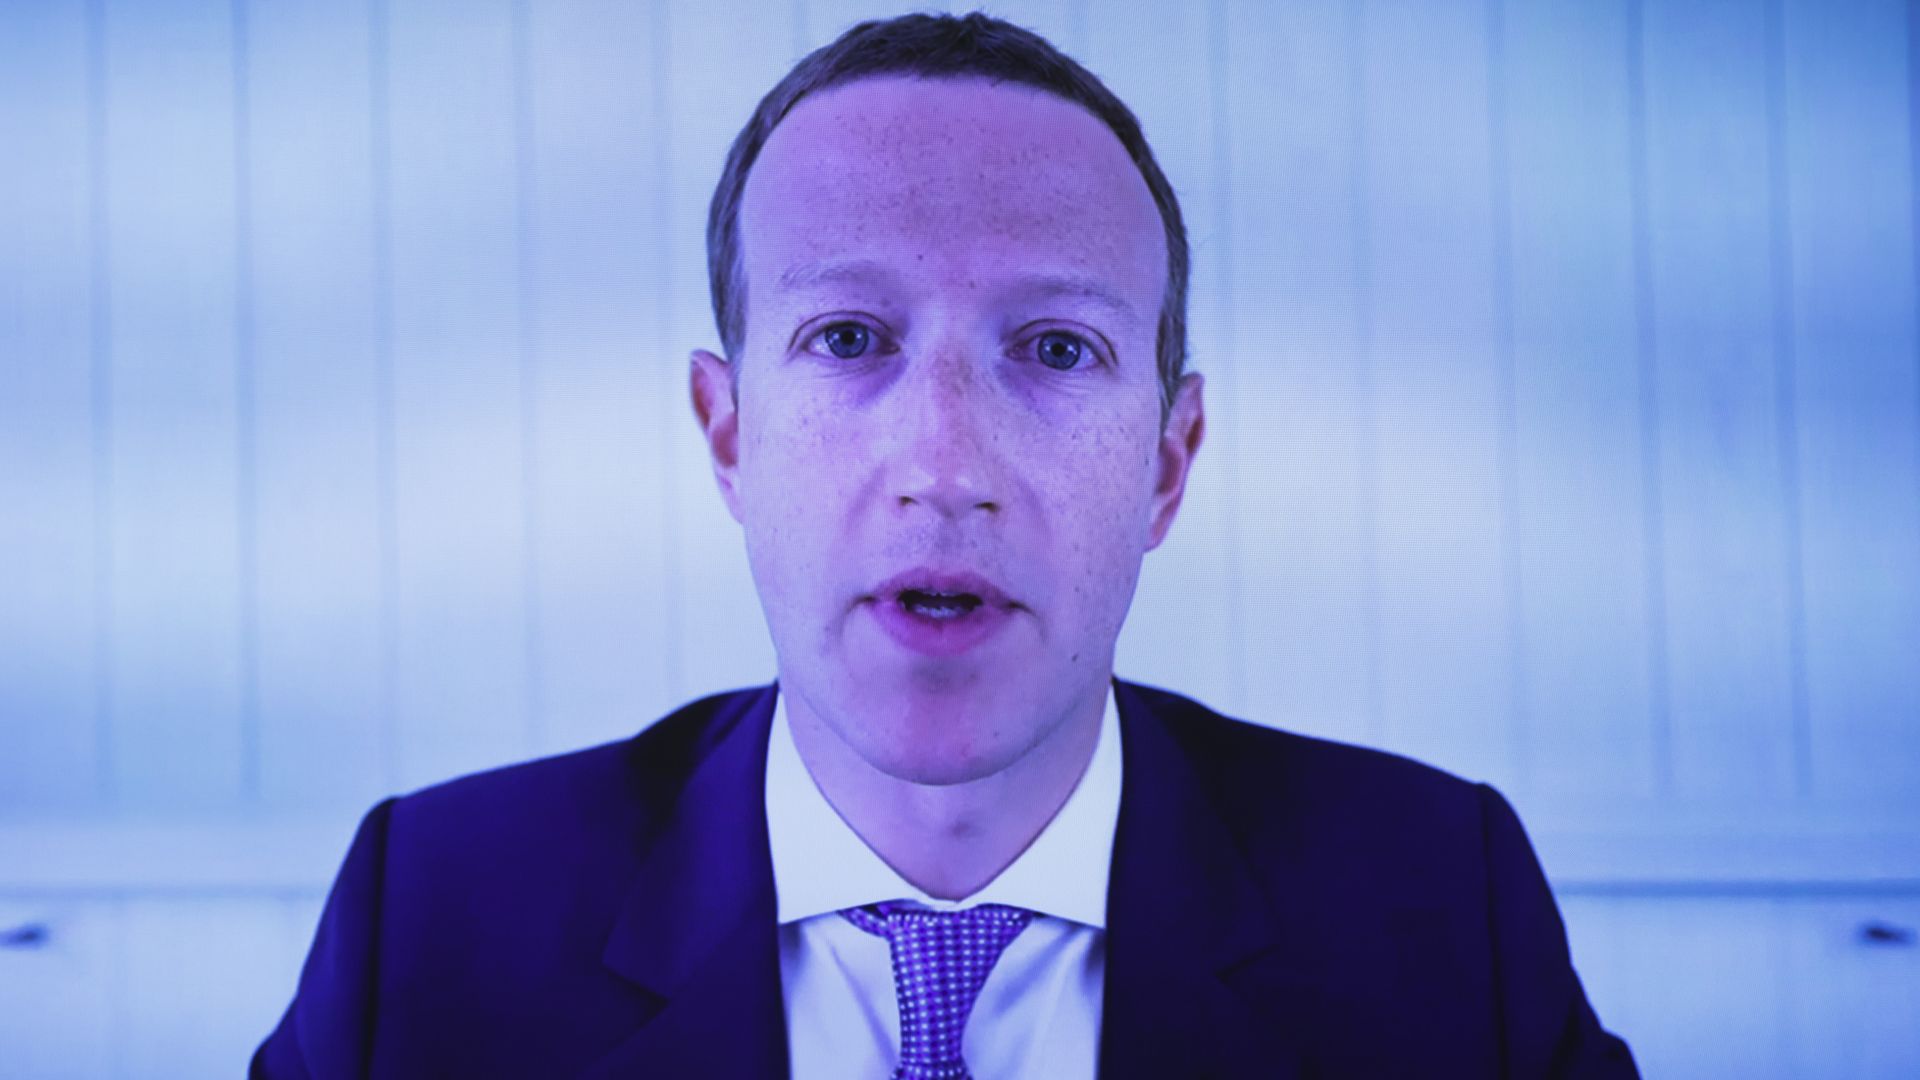 A photo of Facebook CEO Mark Zuckerberg